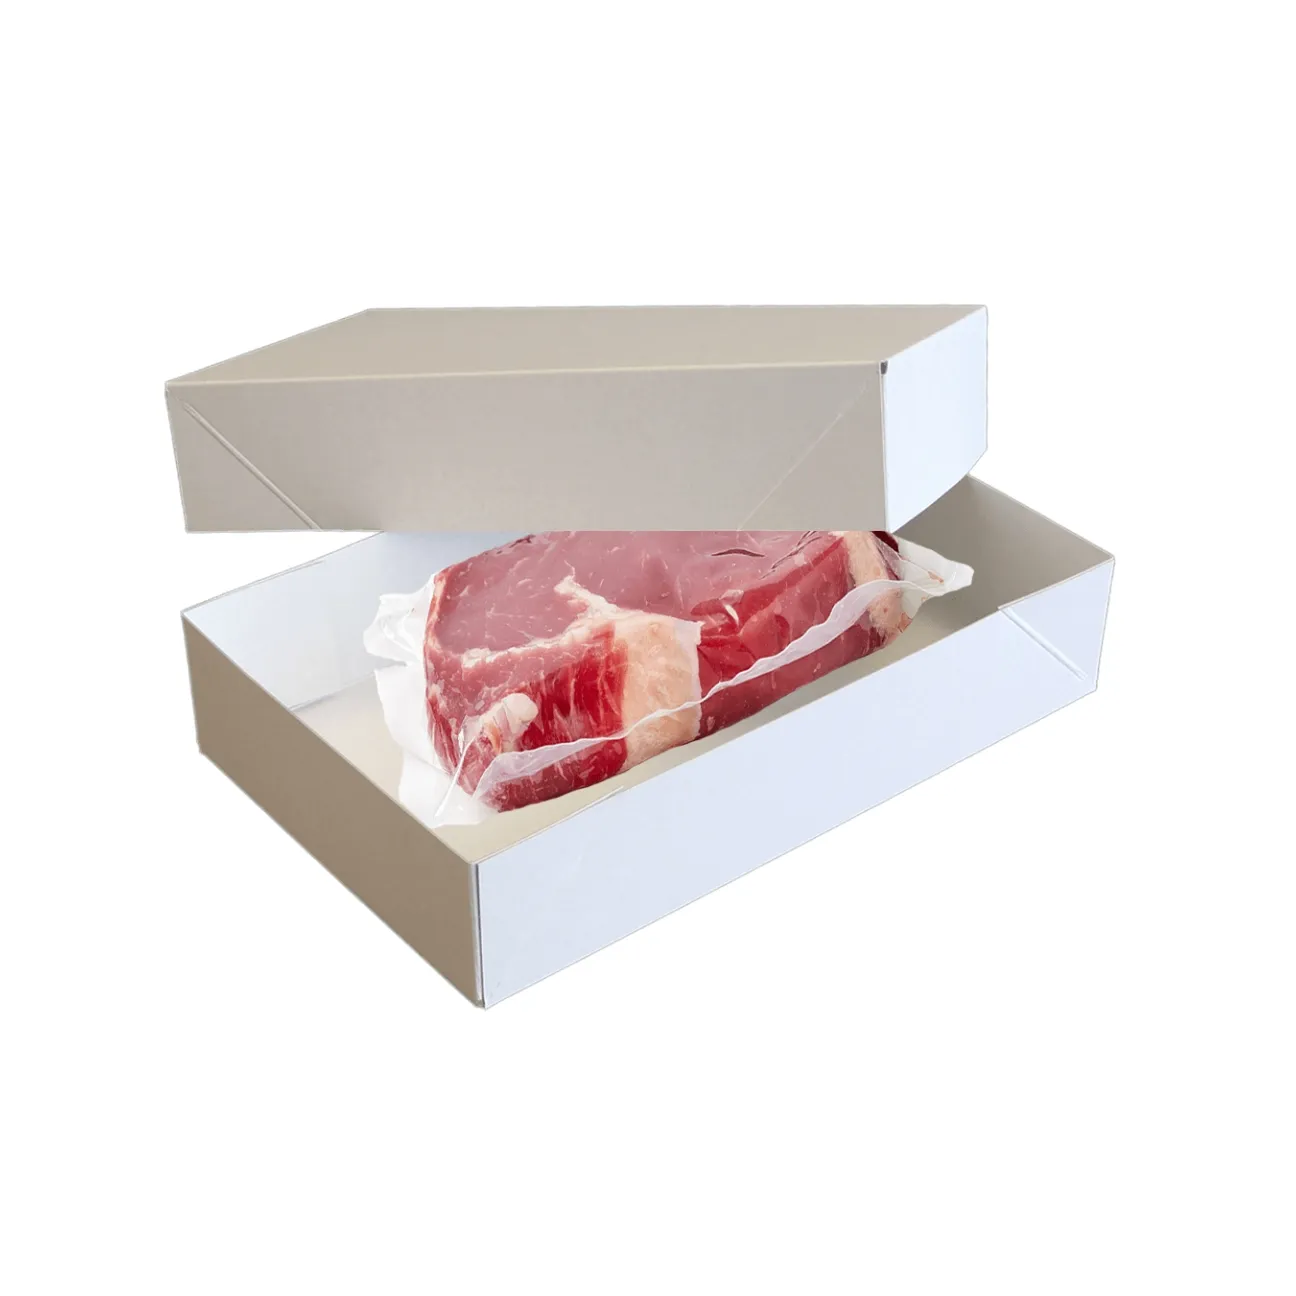 Almanya'da yapılan uygun maliyetli koruyucu ambalaj kaplamalı kağıt et taşıyıcı et taşıma kutusu